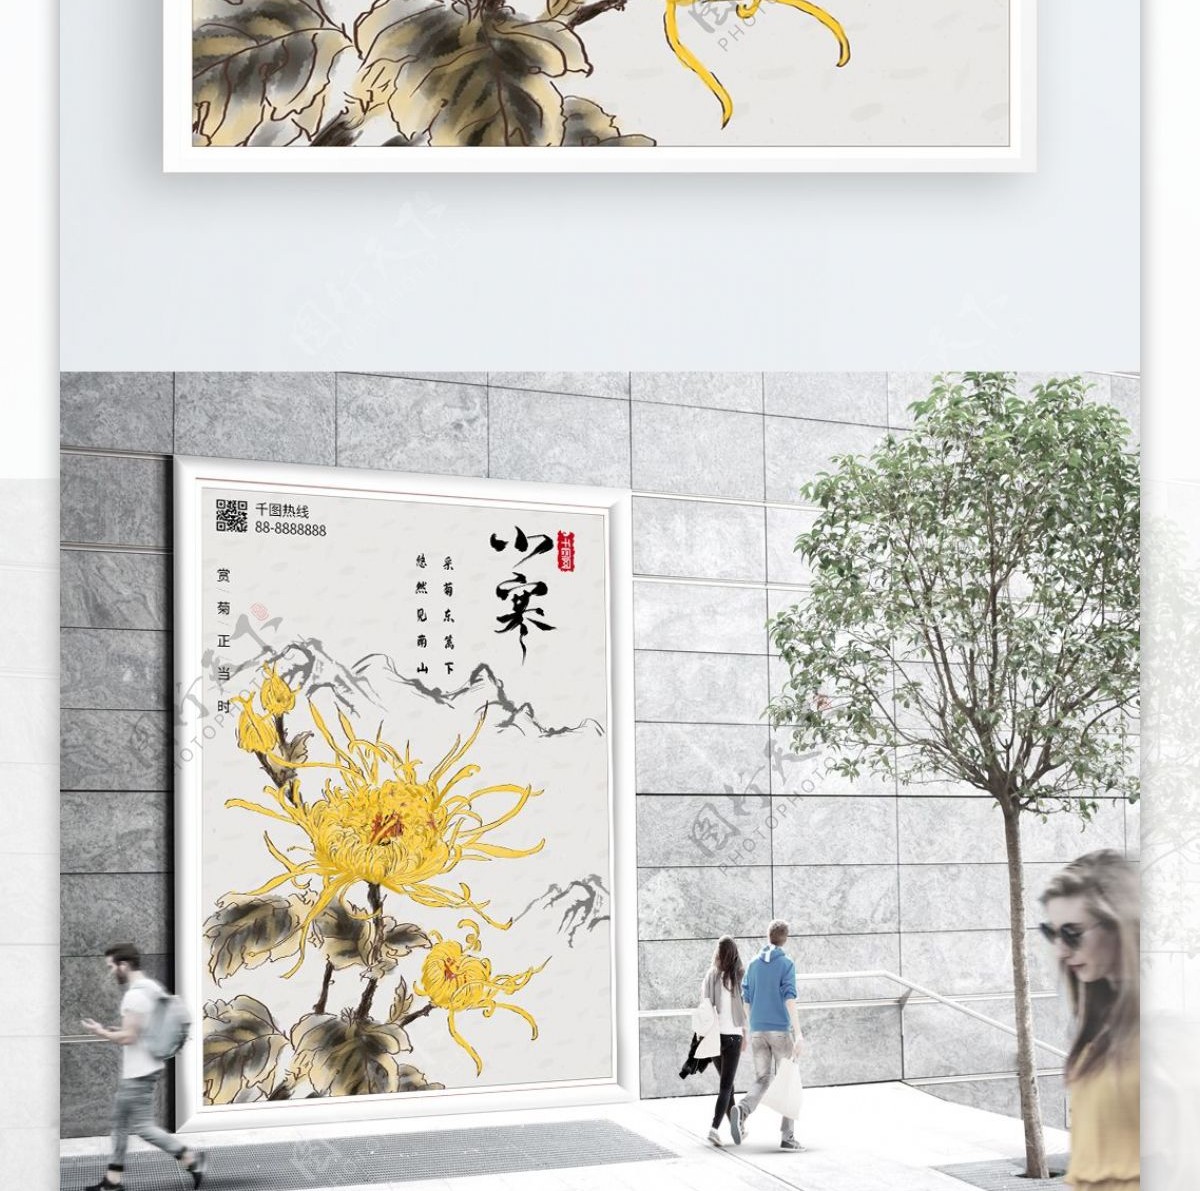 原创手绘中国风菊花展活动宣传插画海报